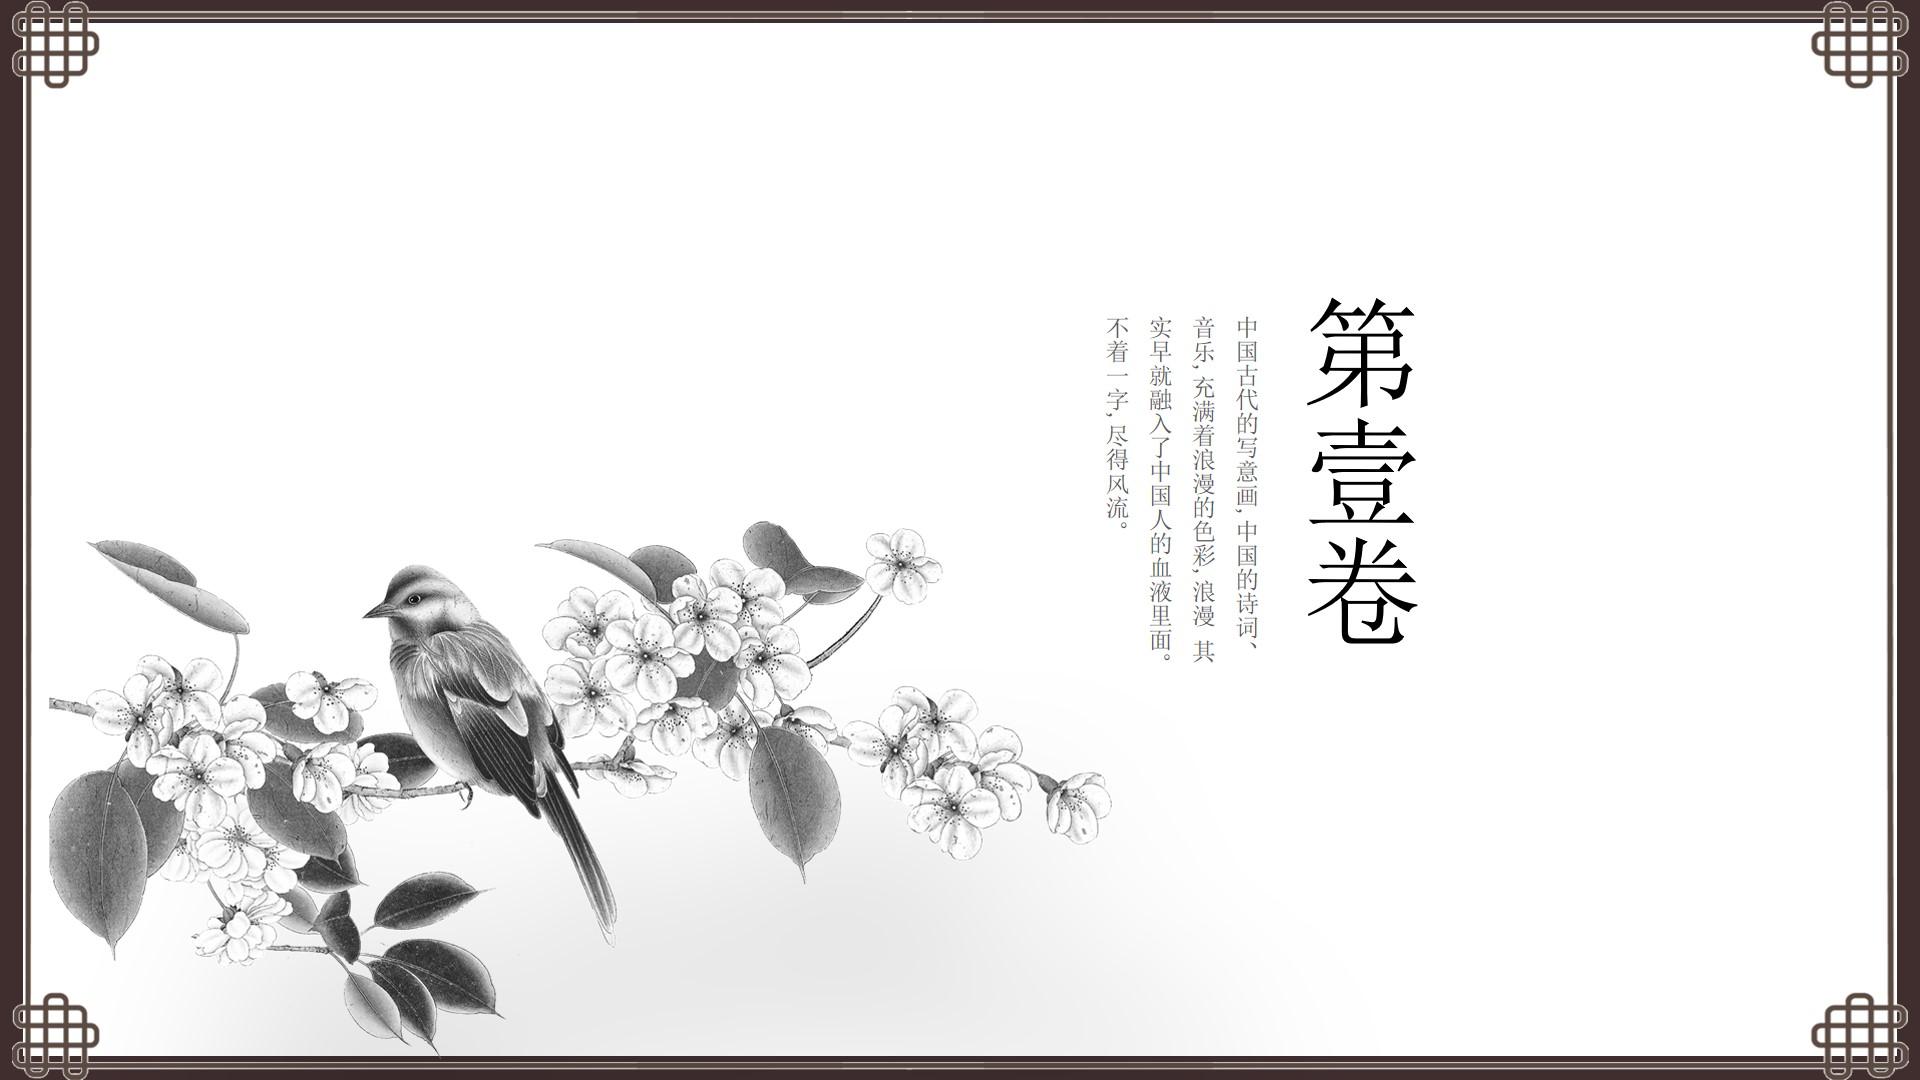 教育教学黑色灰色白色简洁中国风中国人音乐色彩血液诗词云素材PPT模板1672580270625